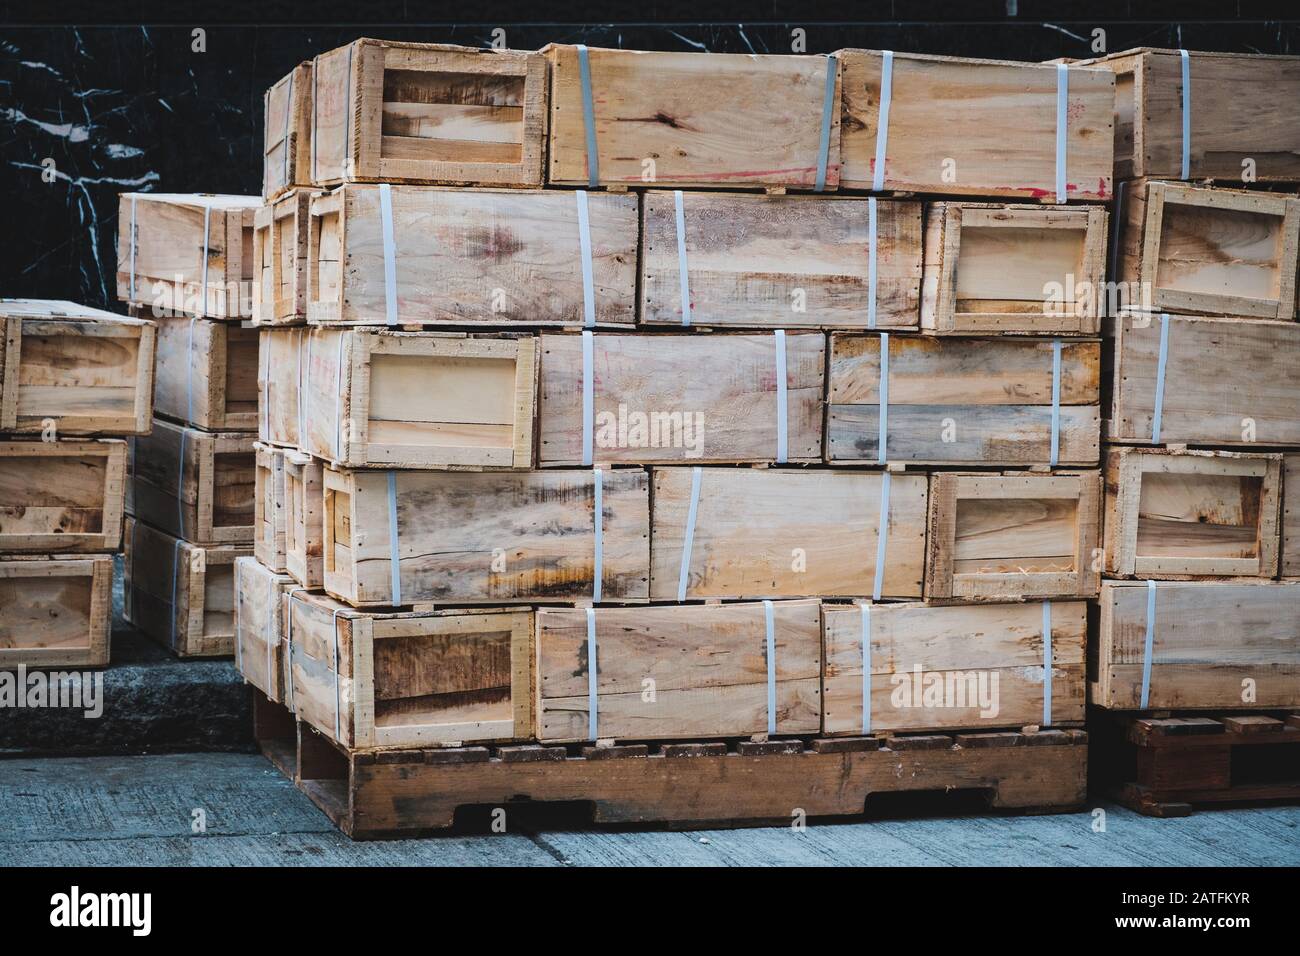 Importazione cinese, esportazione di merci in scatole di legno impilate su pallet Foto Stock